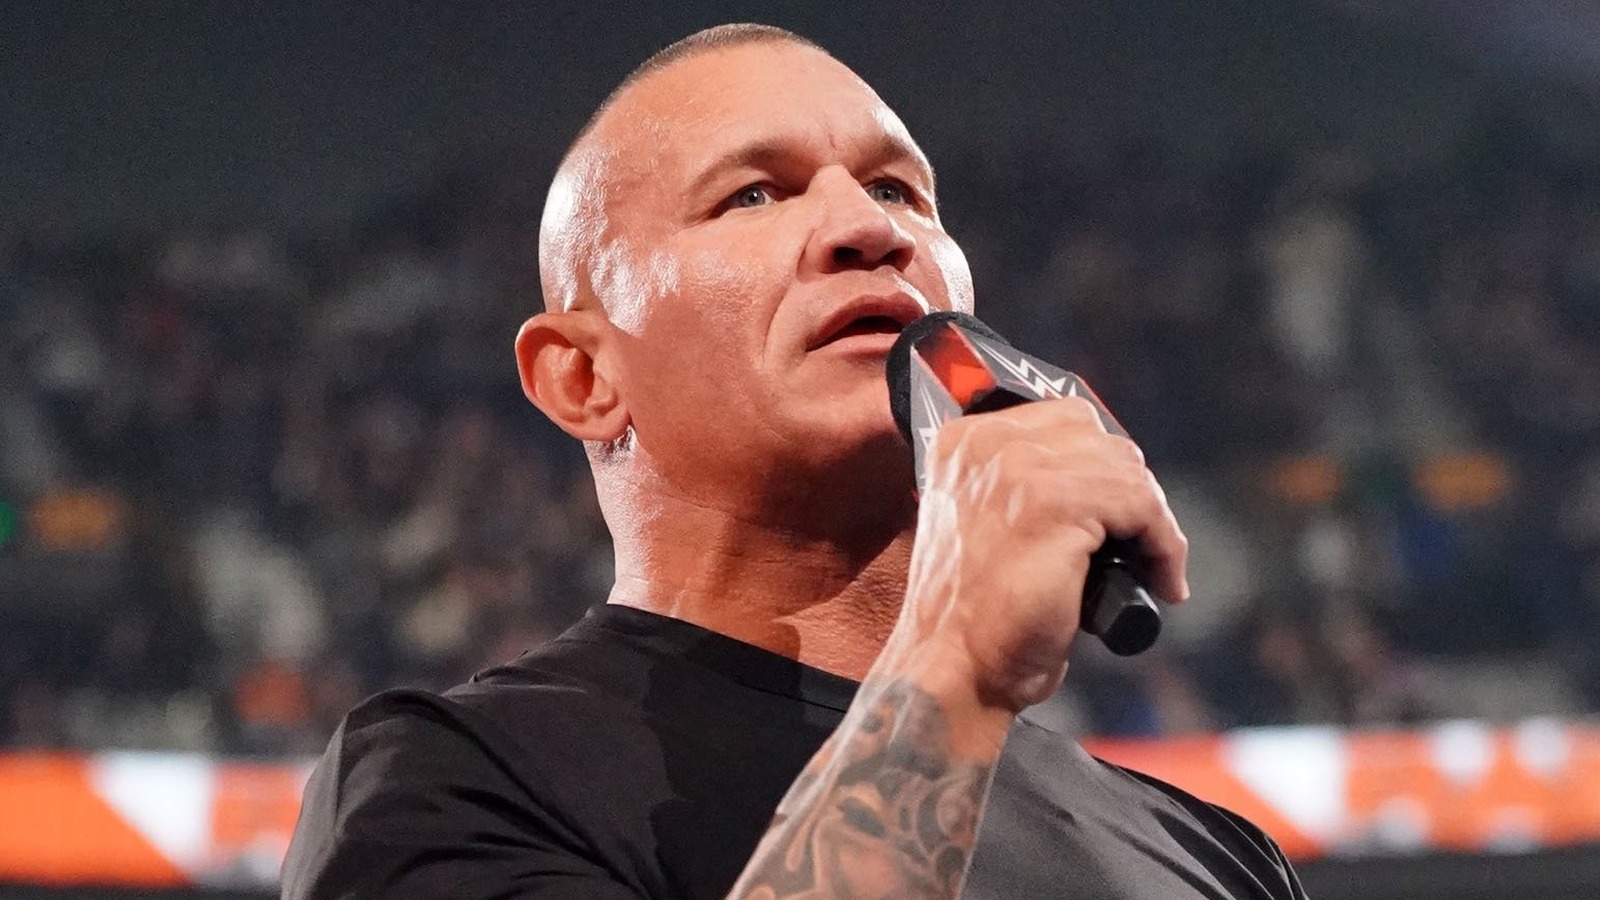 La estrella de la WWE Randy Orton habla sobre la 'nueva perspectiva' después de más de una década de dolor